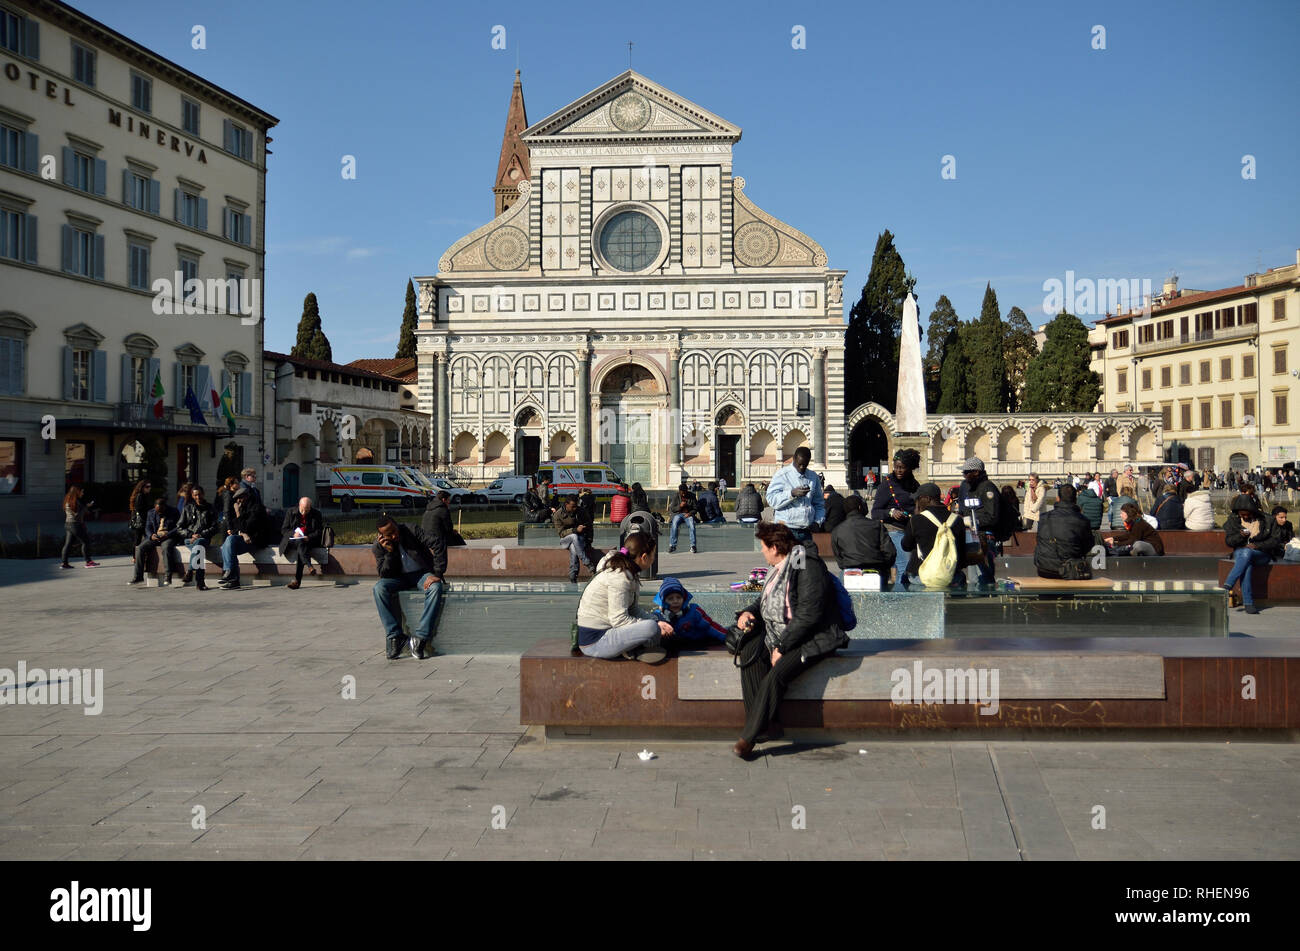 Basilica of Santa Croxe at the Piazza Santa Croce in Florence, Italy Stock Photo